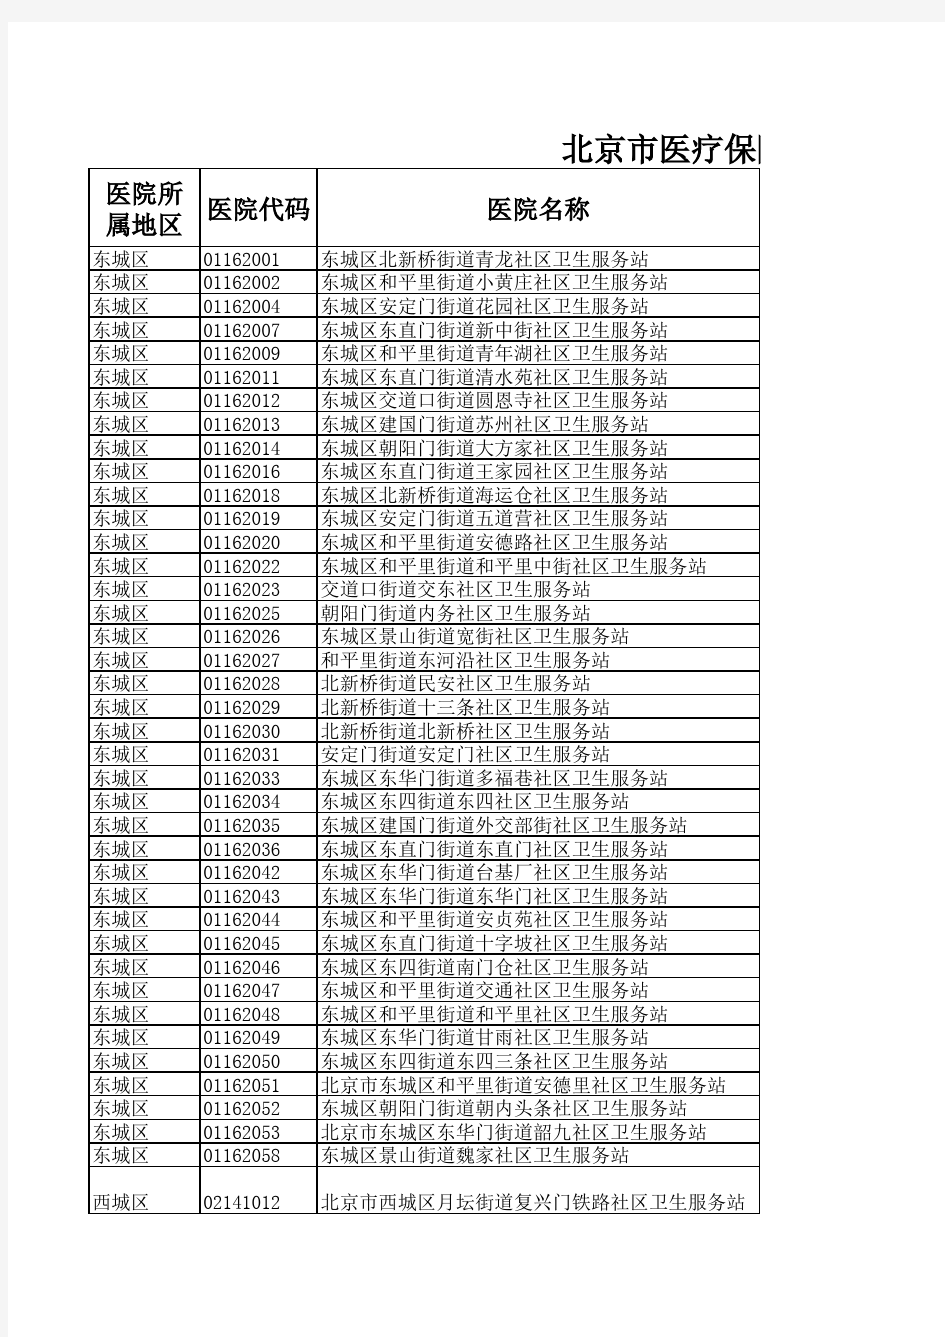 北京市医疗保险定点社区卫生服务站及上级单位名称